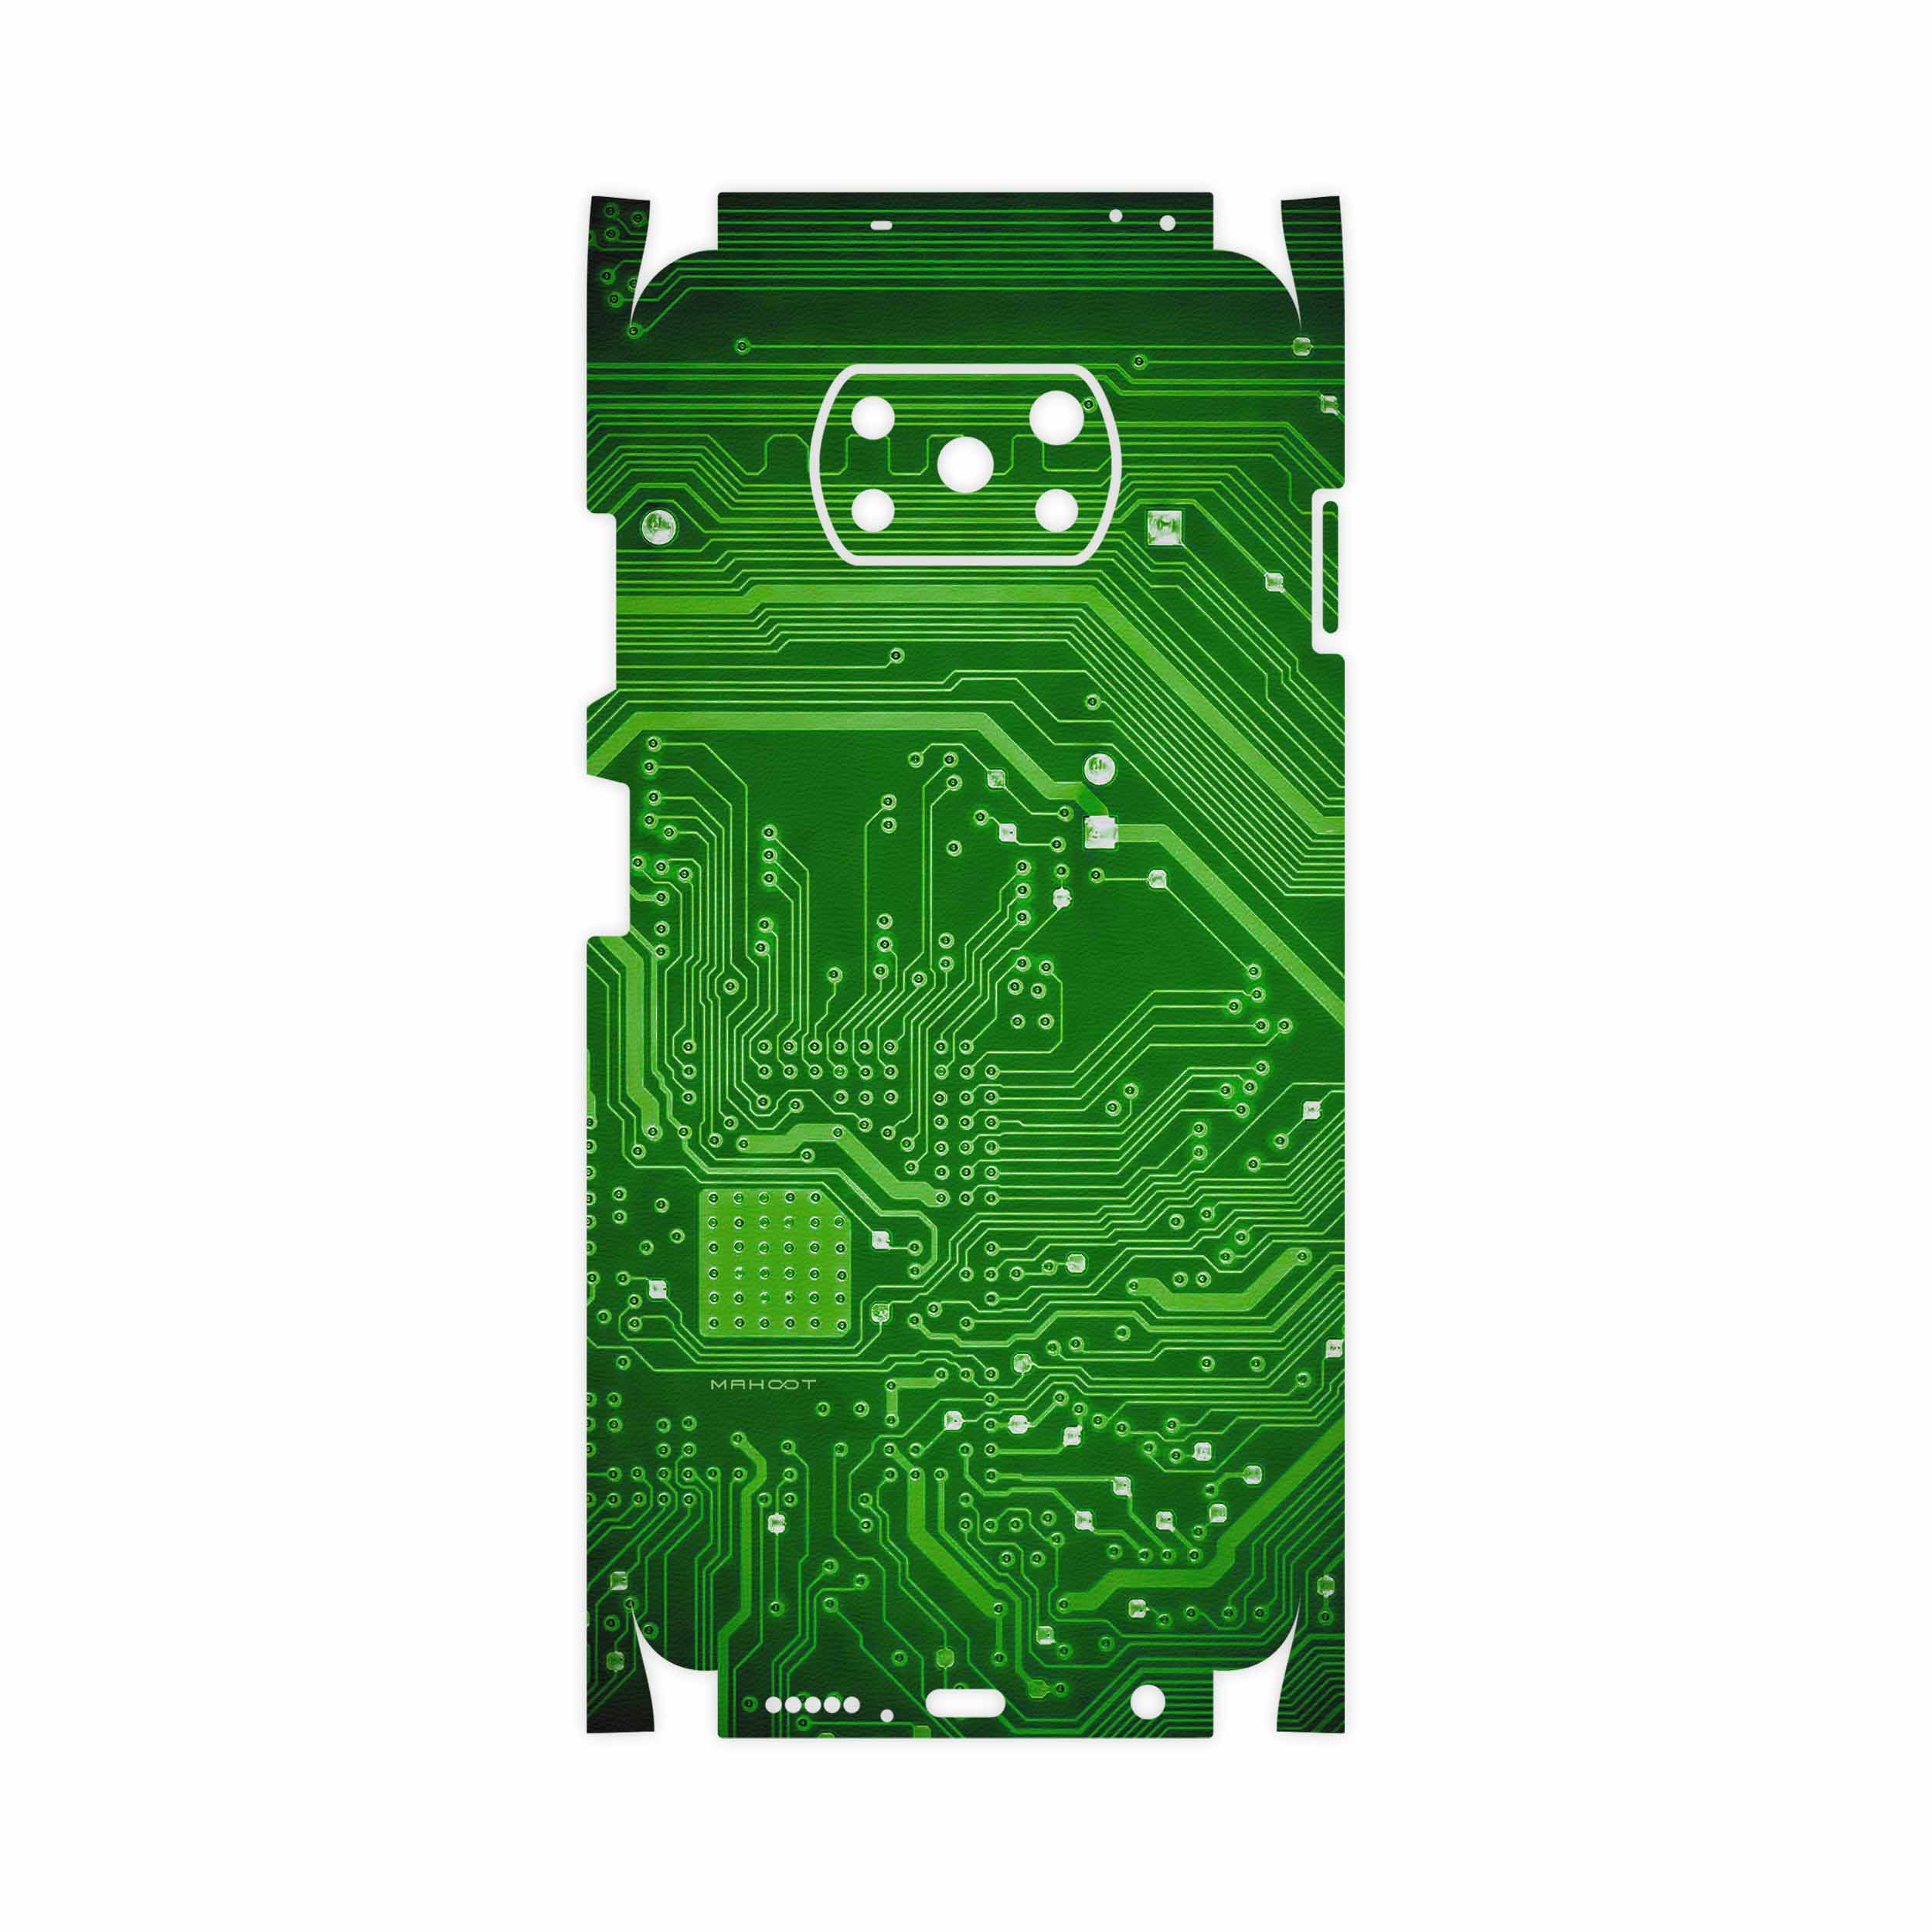 نقد و بررسی برچسب پوششی ماهوت مدل Green Printed Circuit Board-FullSkin مناسب برای گوشی موبایل شیایومی Poco X3 NFC توسط خریداران